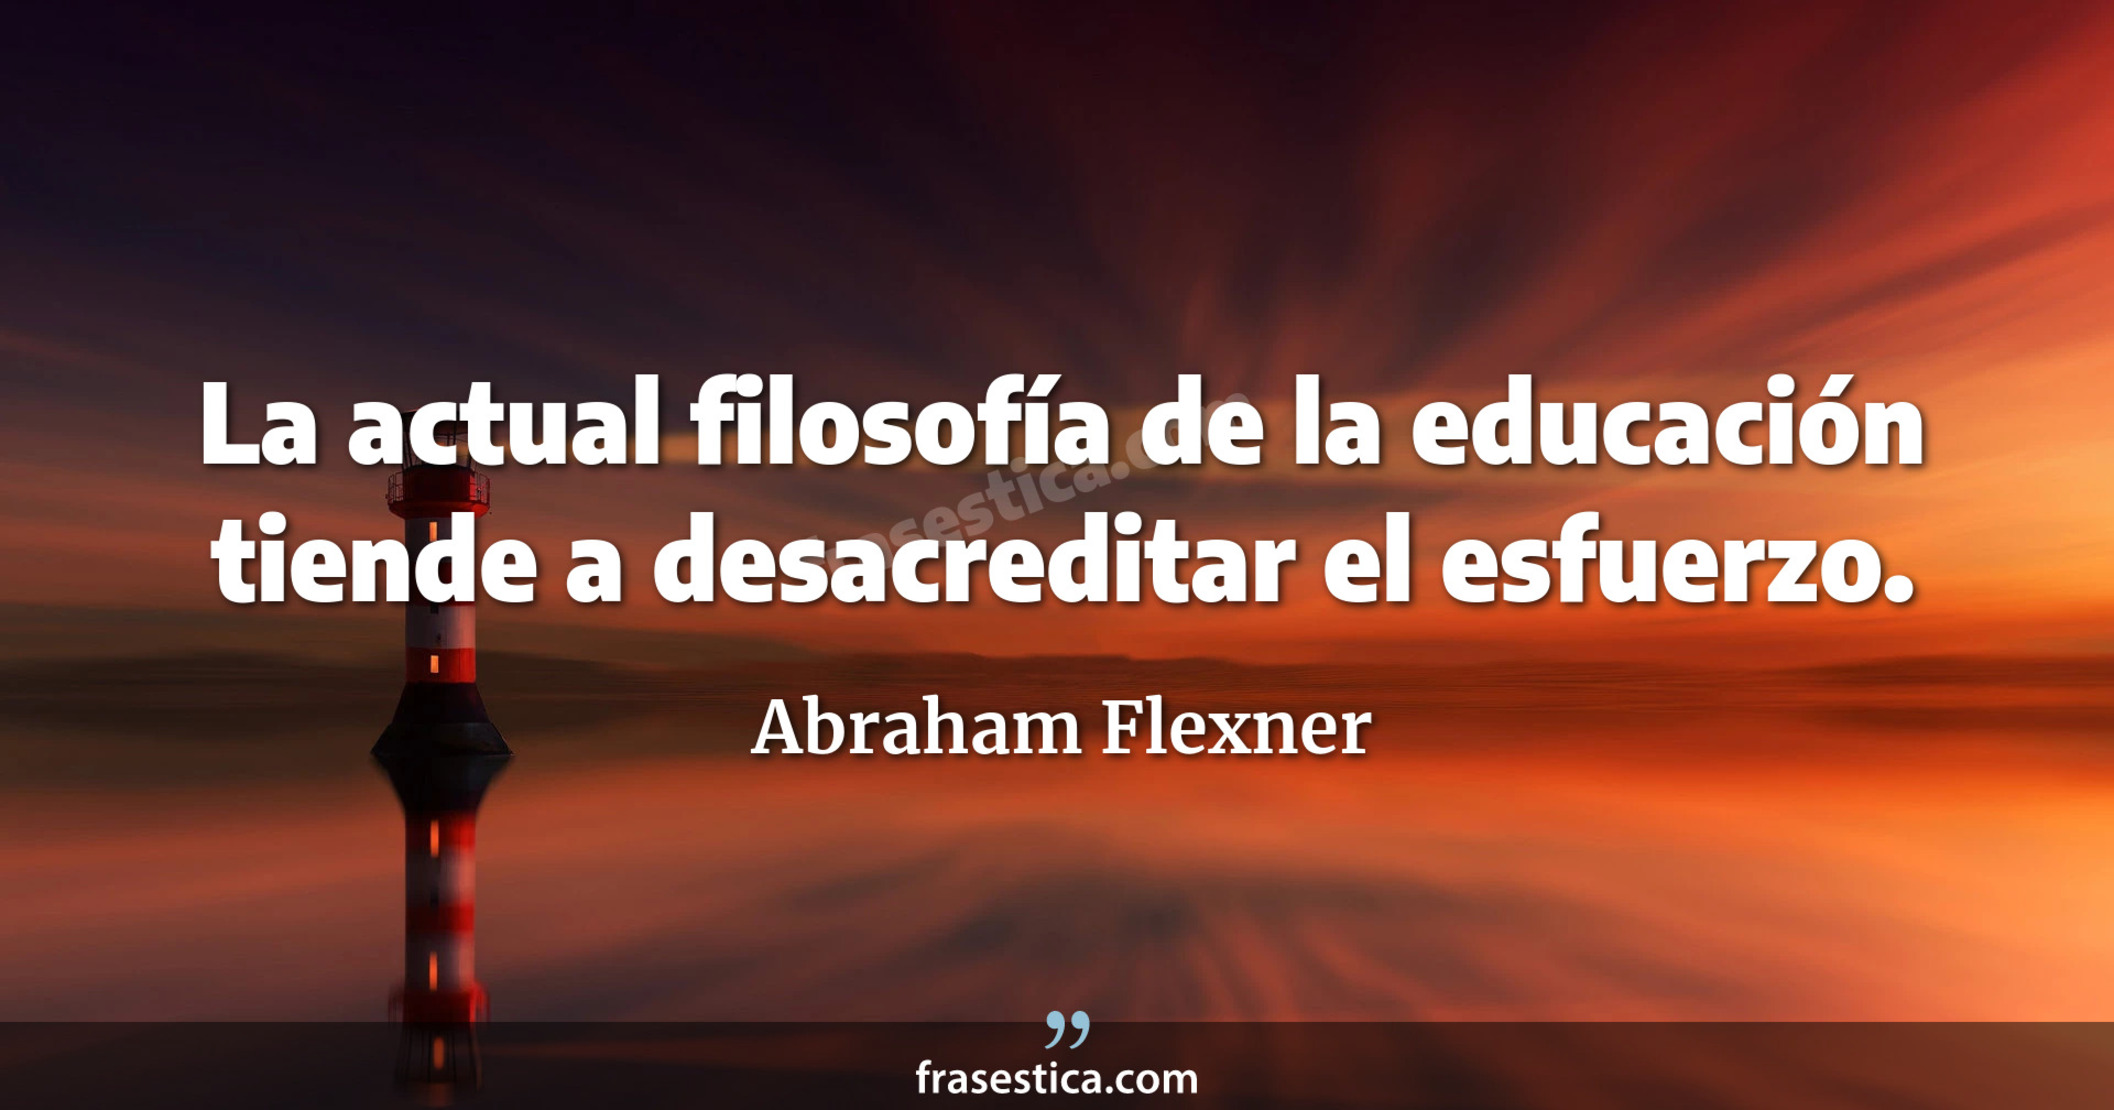 La actual filosofía de la educación tiende a desacreditar el esfuerzo. - Abraham Flexner